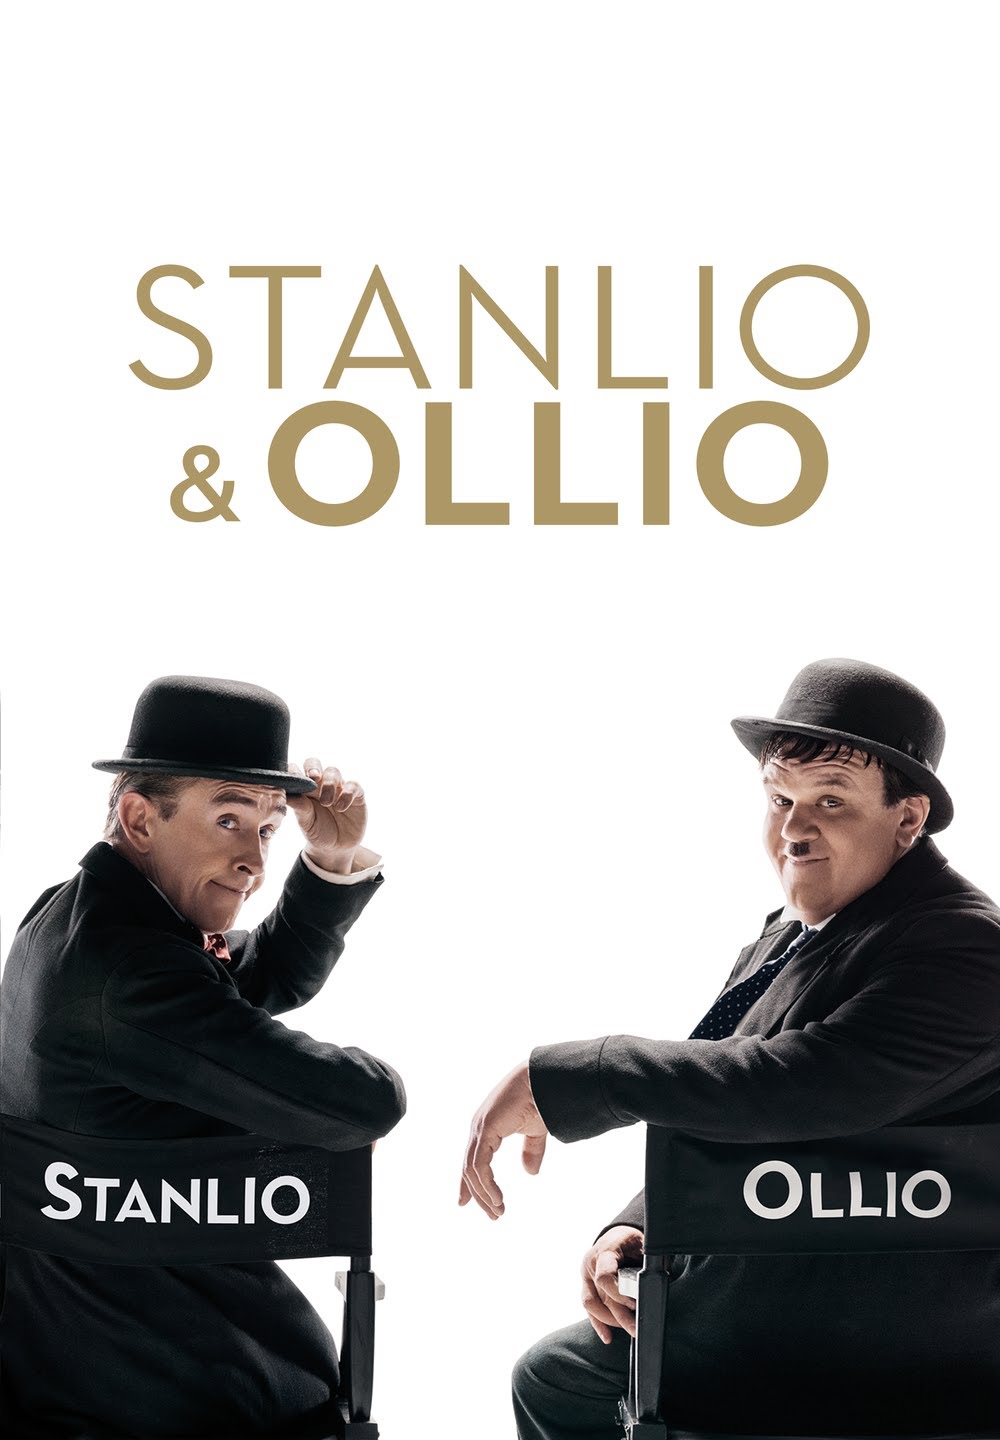 Stanlio e Ollio [HD] (2019)